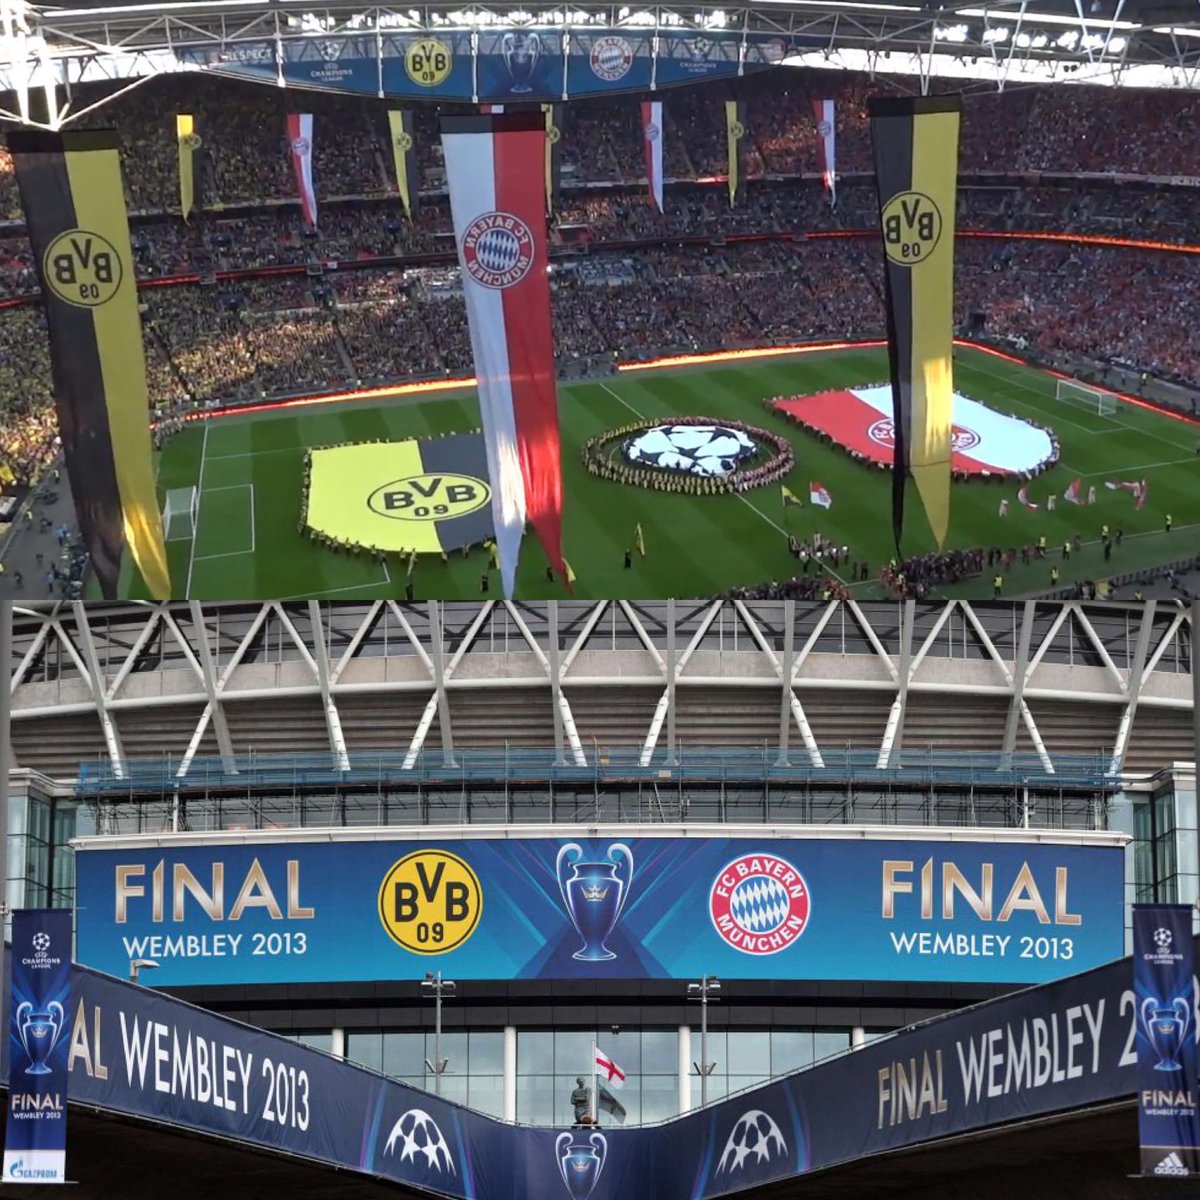 🇩🇪 Tarihte 3. kez 2 Alman takımı Şampiyonlar Ligi yarı finaline ulaştı: 

2023/24: Bayern & BVB 
2019/20: Bayern & RB Leipzig
2012/13: Bayern & BVB

Wembley'de oynanan 2013 finalinin tekrarı mı geliyor yoksa? 🤔